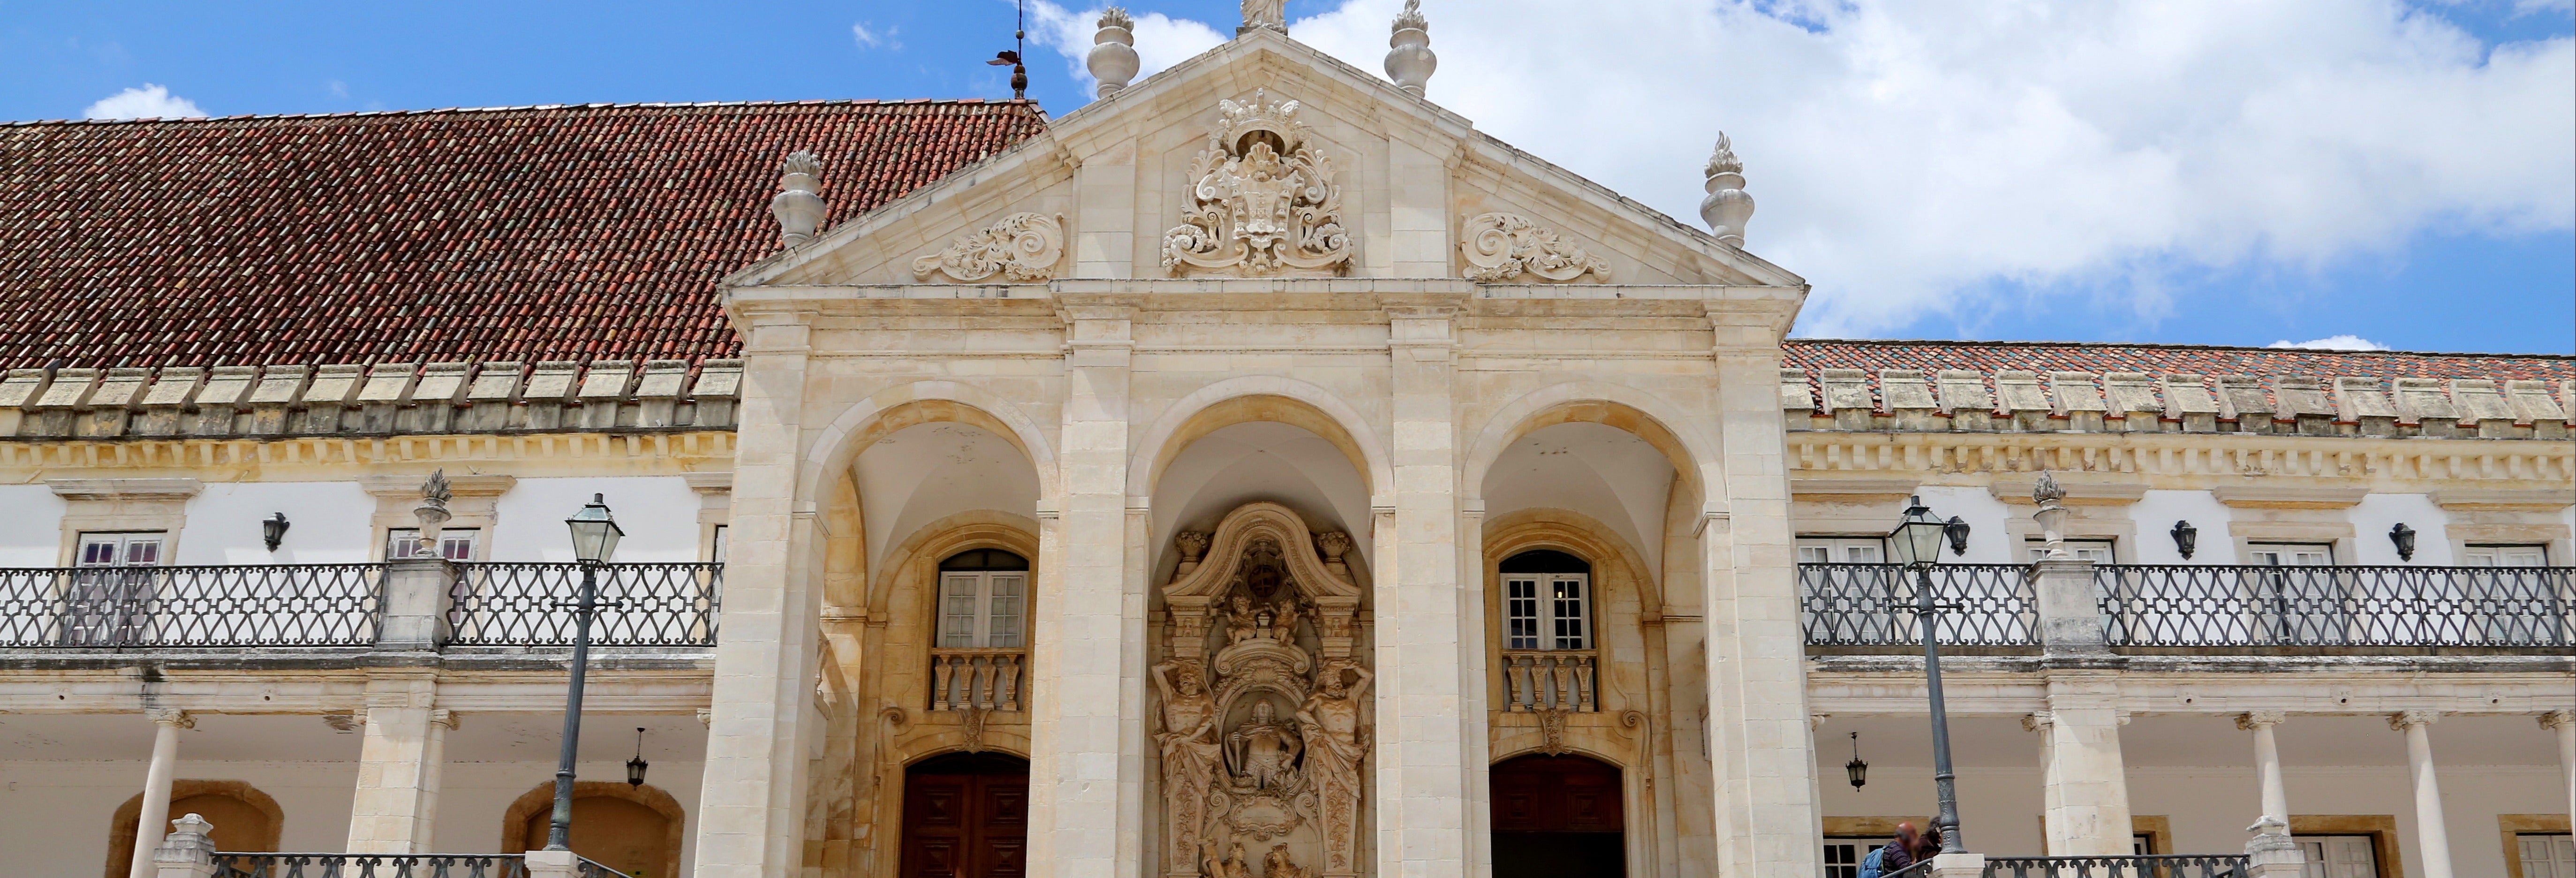 Visita guiada pela Universidade de Coimbra